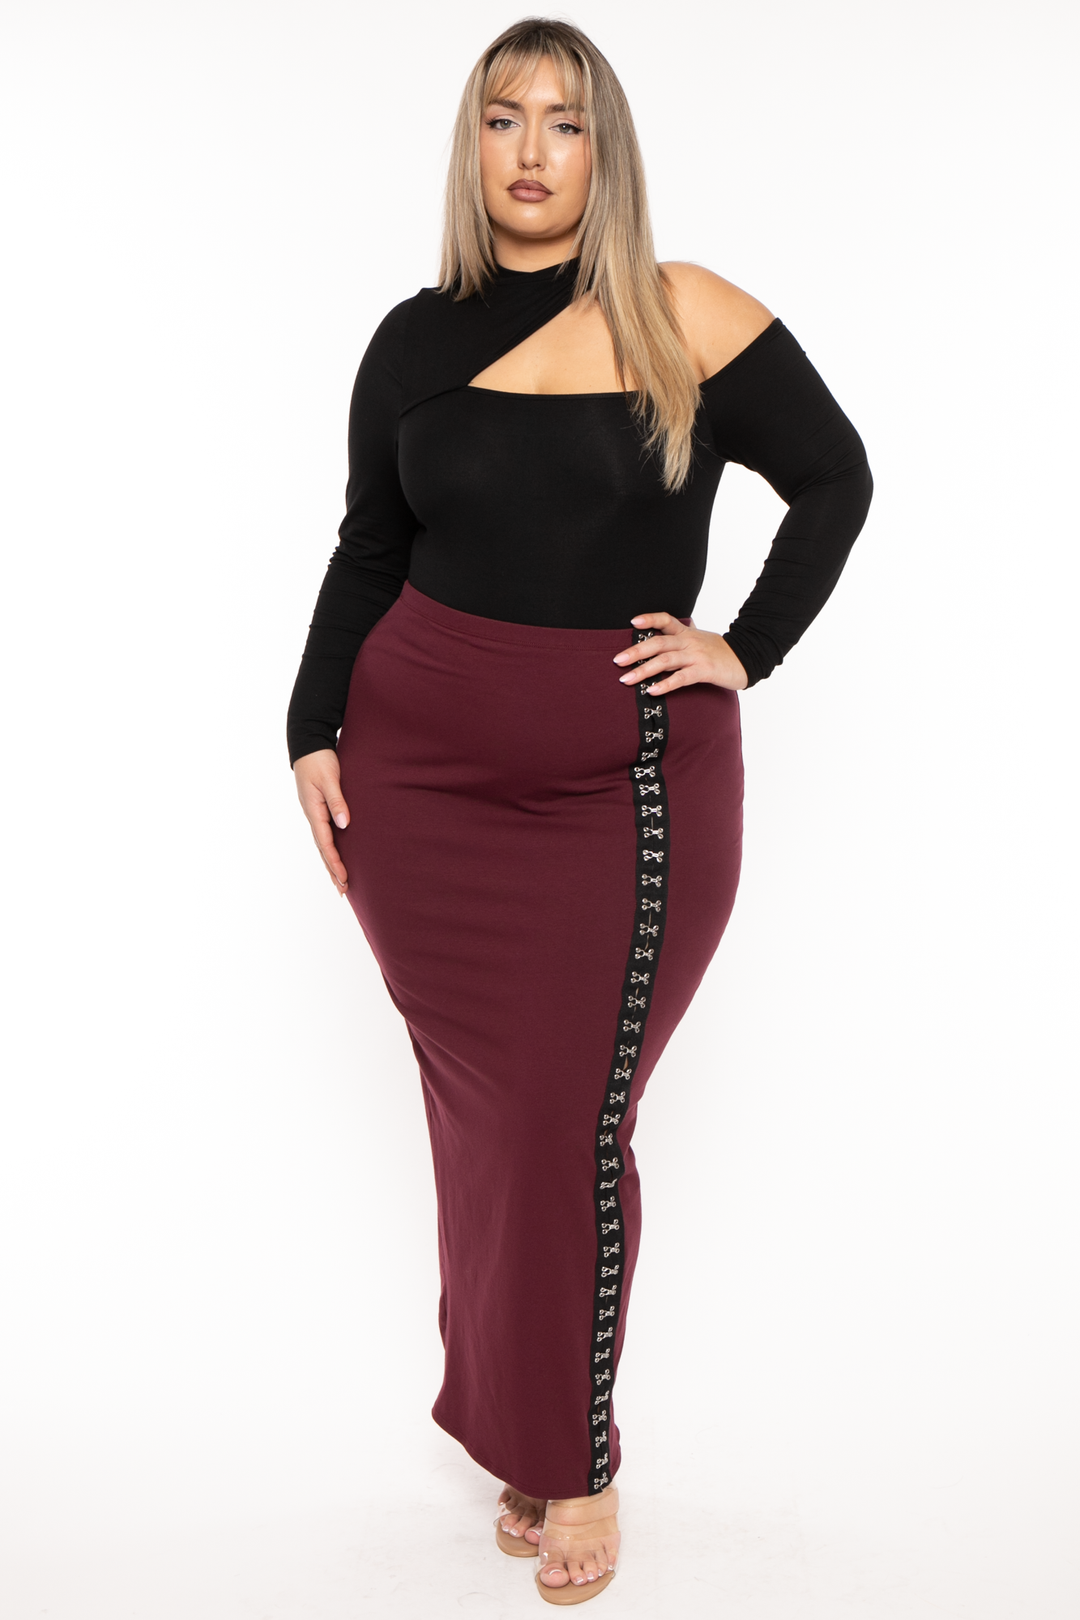 Curvy Sense Tops Plus Size Mila Asymmetric Bodysuit - Black